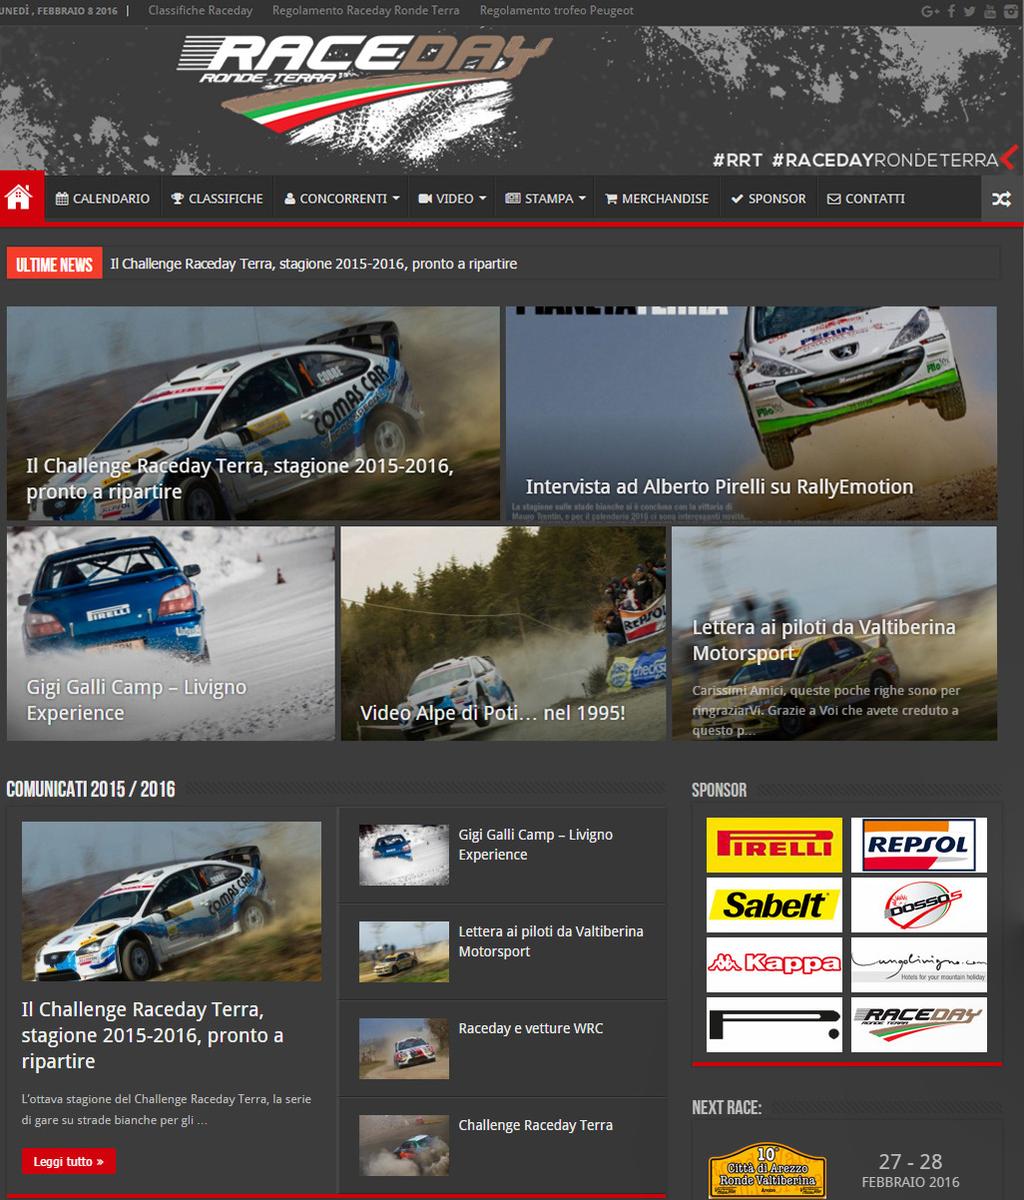 DIGITALE SITO WEB RACEDAY Il sito web di Raceday è la principale fonte di informazioni per gli iscritti al campionato e per i fan della serie.